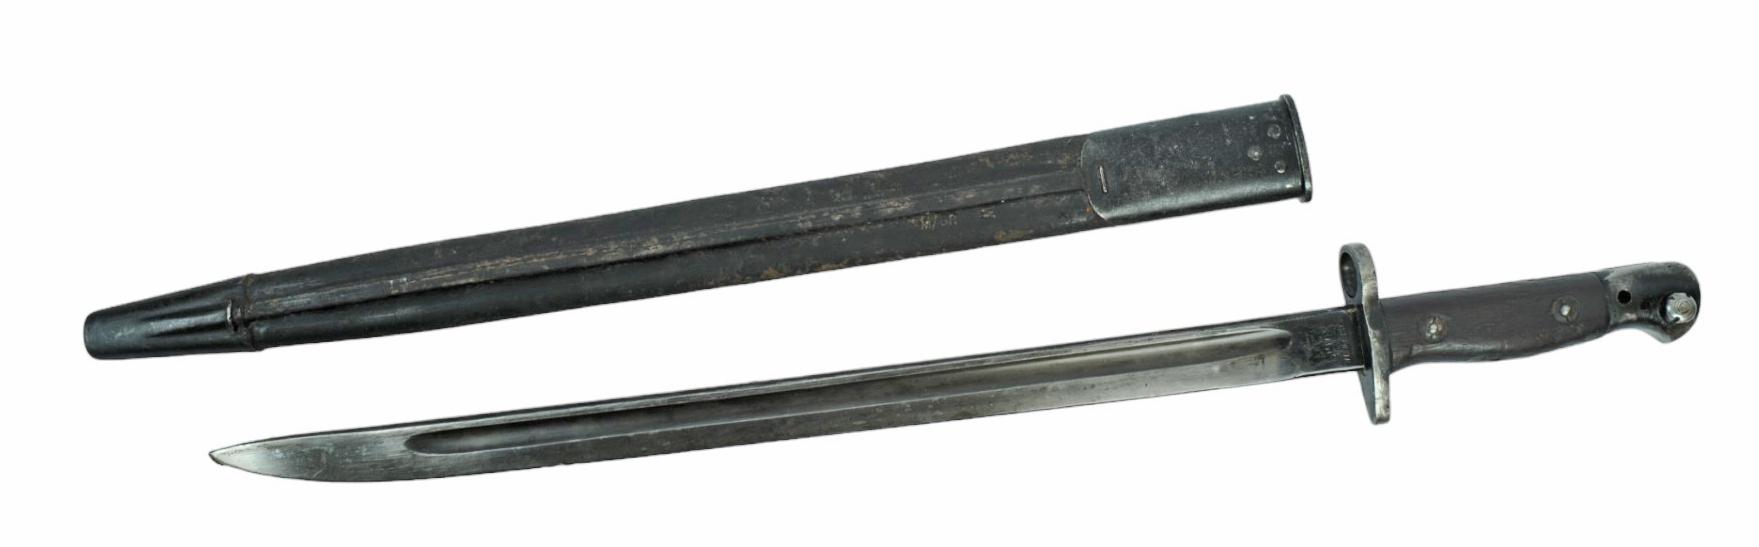 British Military WWI/II era SMLE M1907 Enfield Rifle Bayonet (NBW)